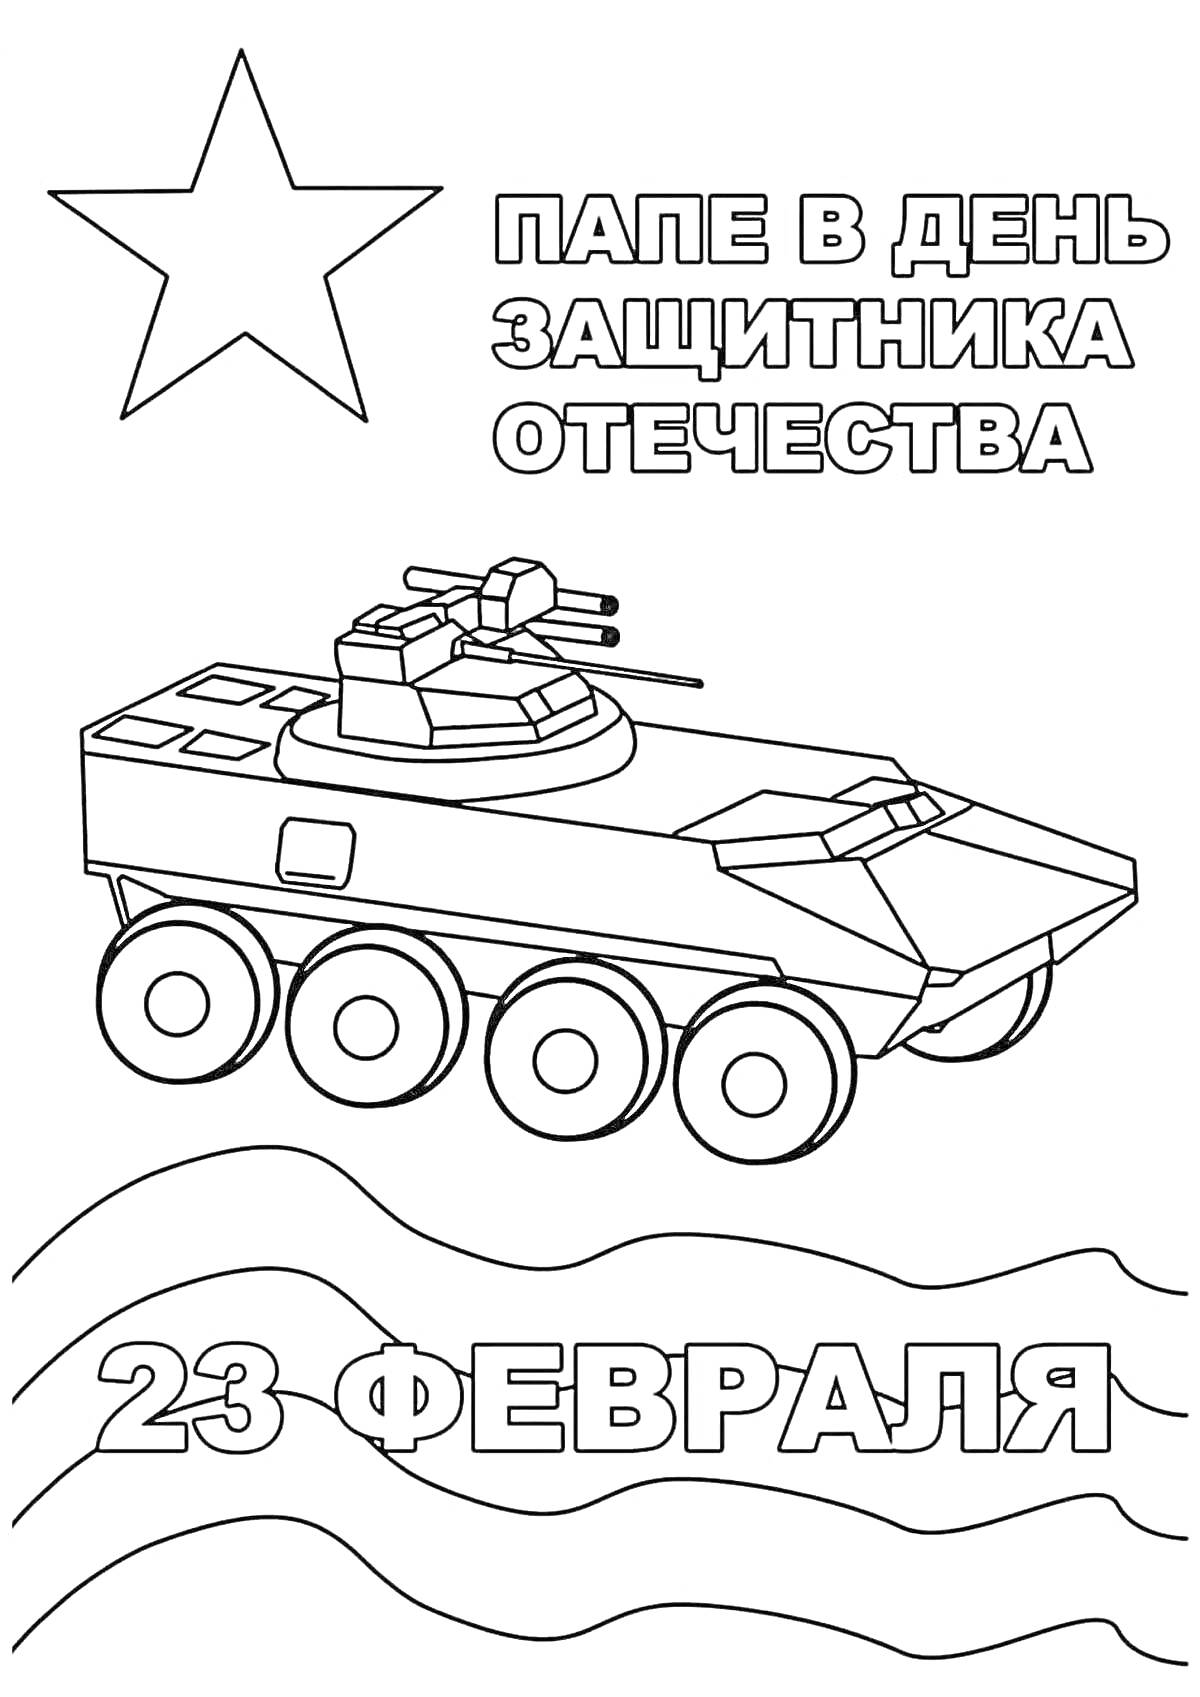 Раскраска открытка с танком и звездой к 23 февраля для папы